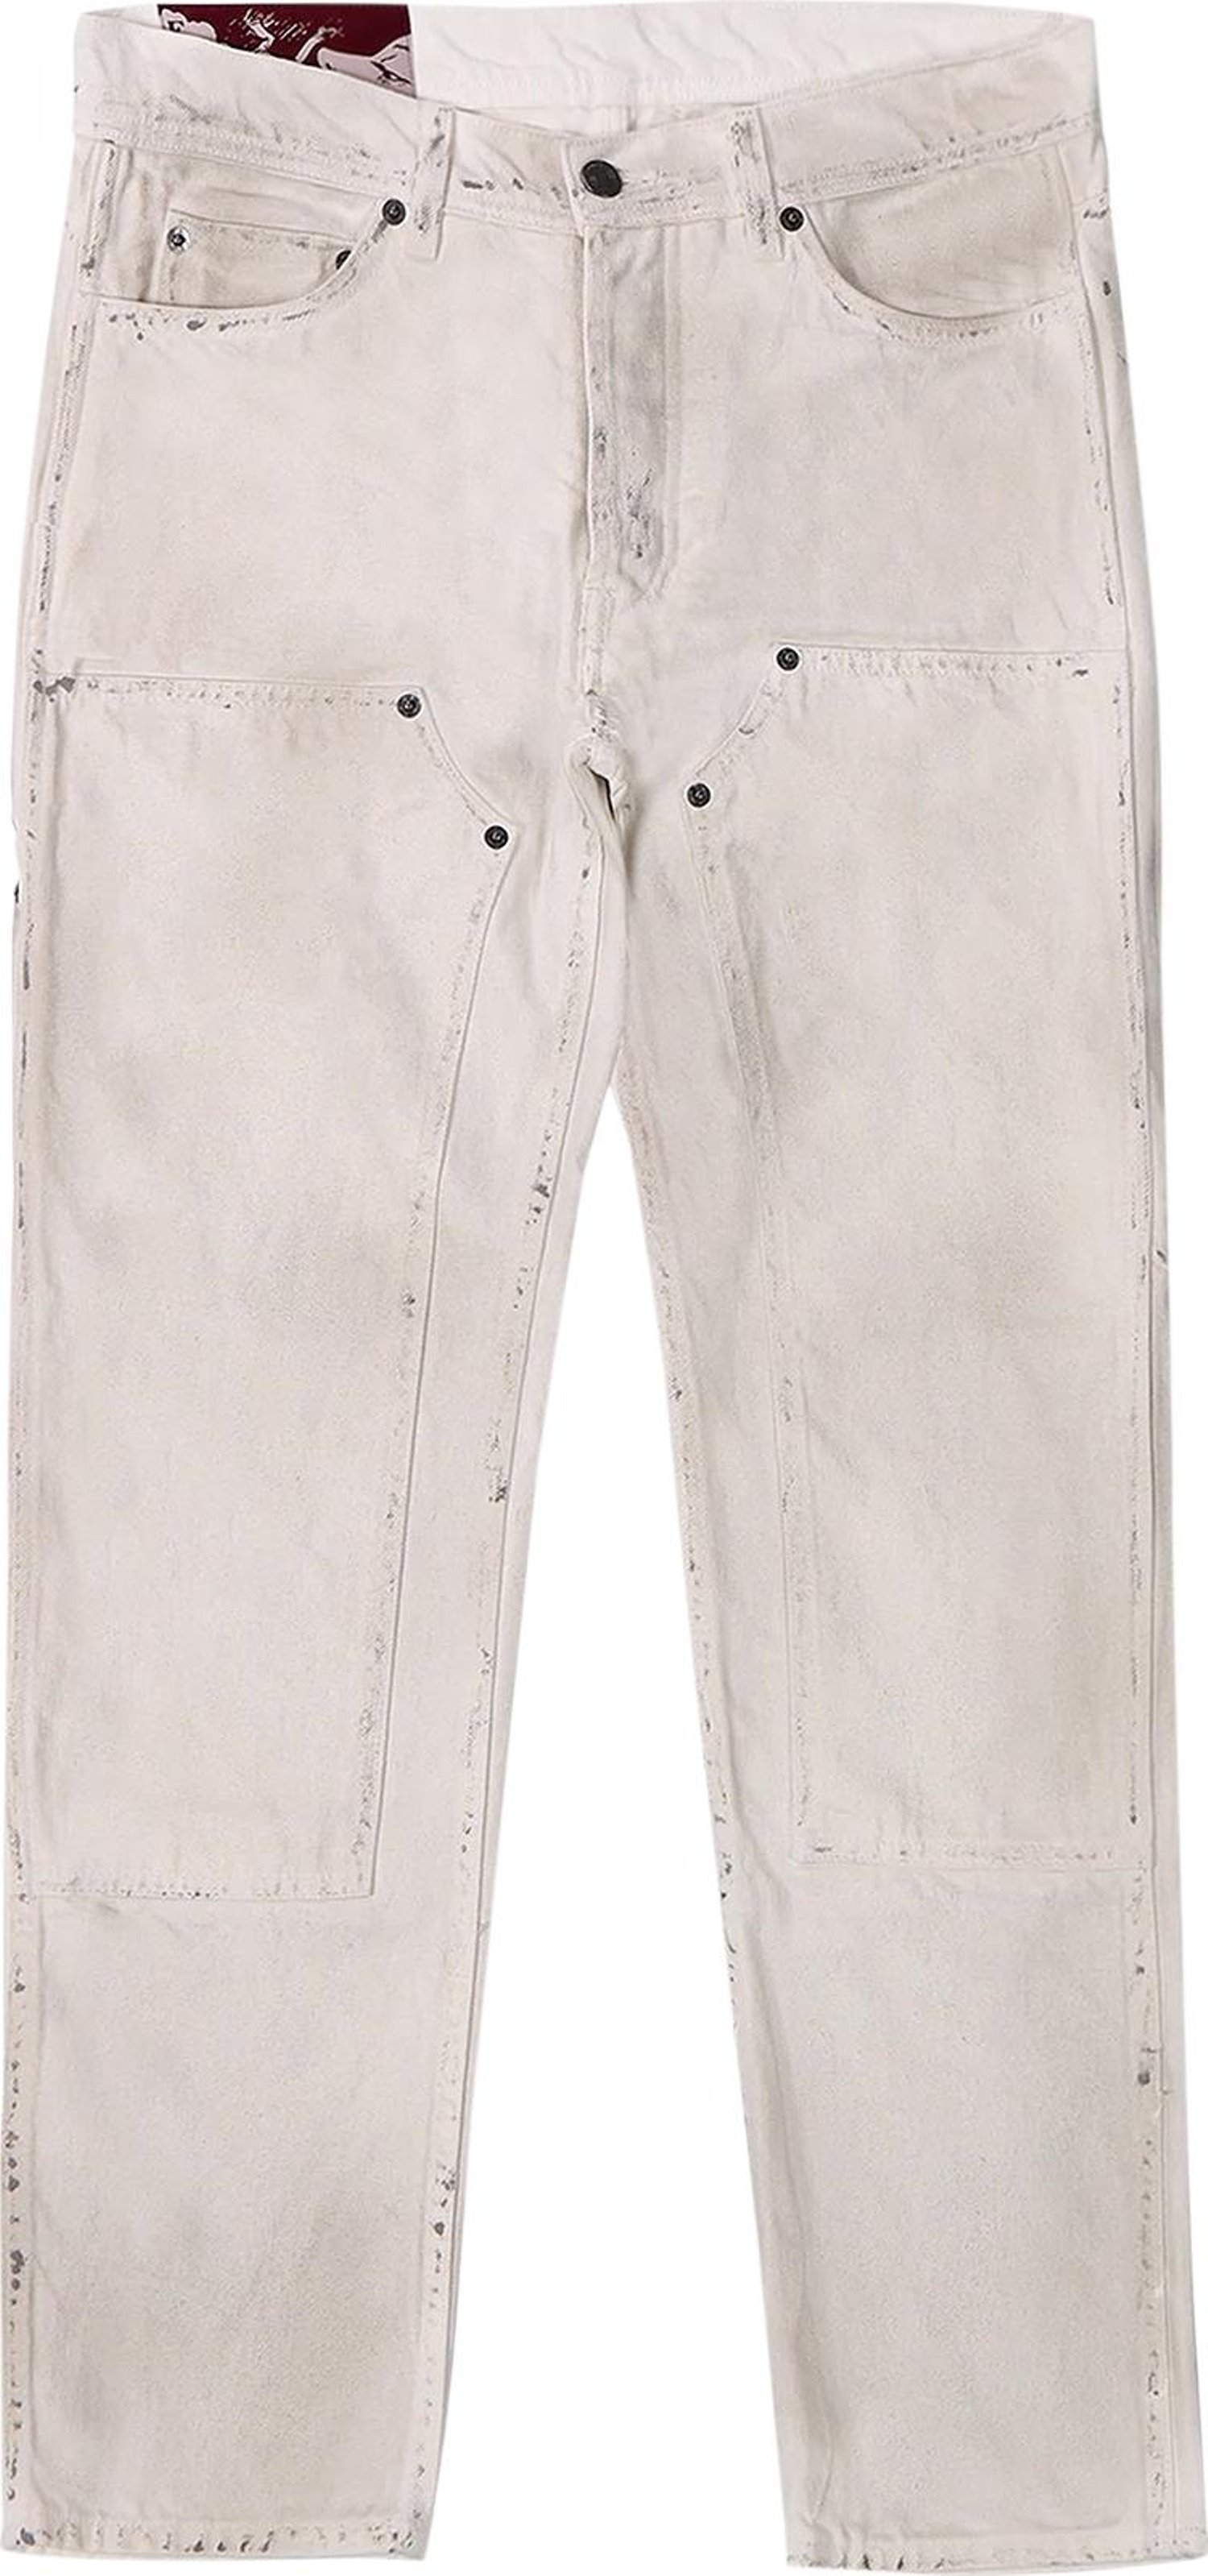 Buy Enfants Riches Déprimés Carpenter Jeans 'Dirty White' - FW21 050 ...